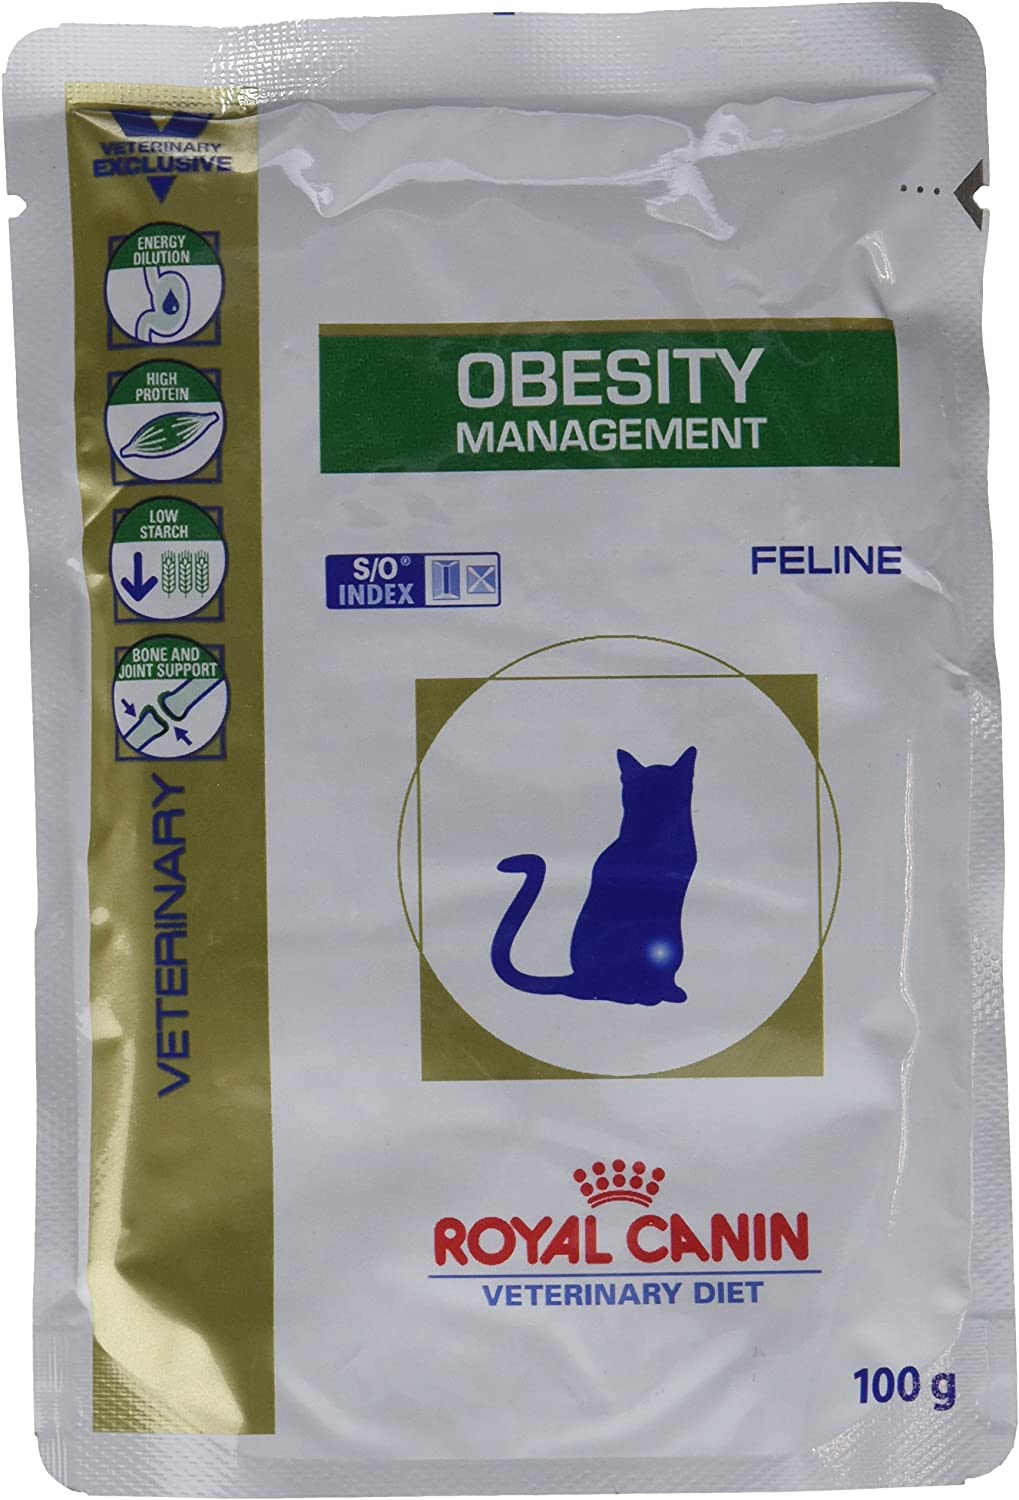  Royal Canin, Comida para gatos, Dieta veterinaria Canina, Obesity Management, 12x100g 